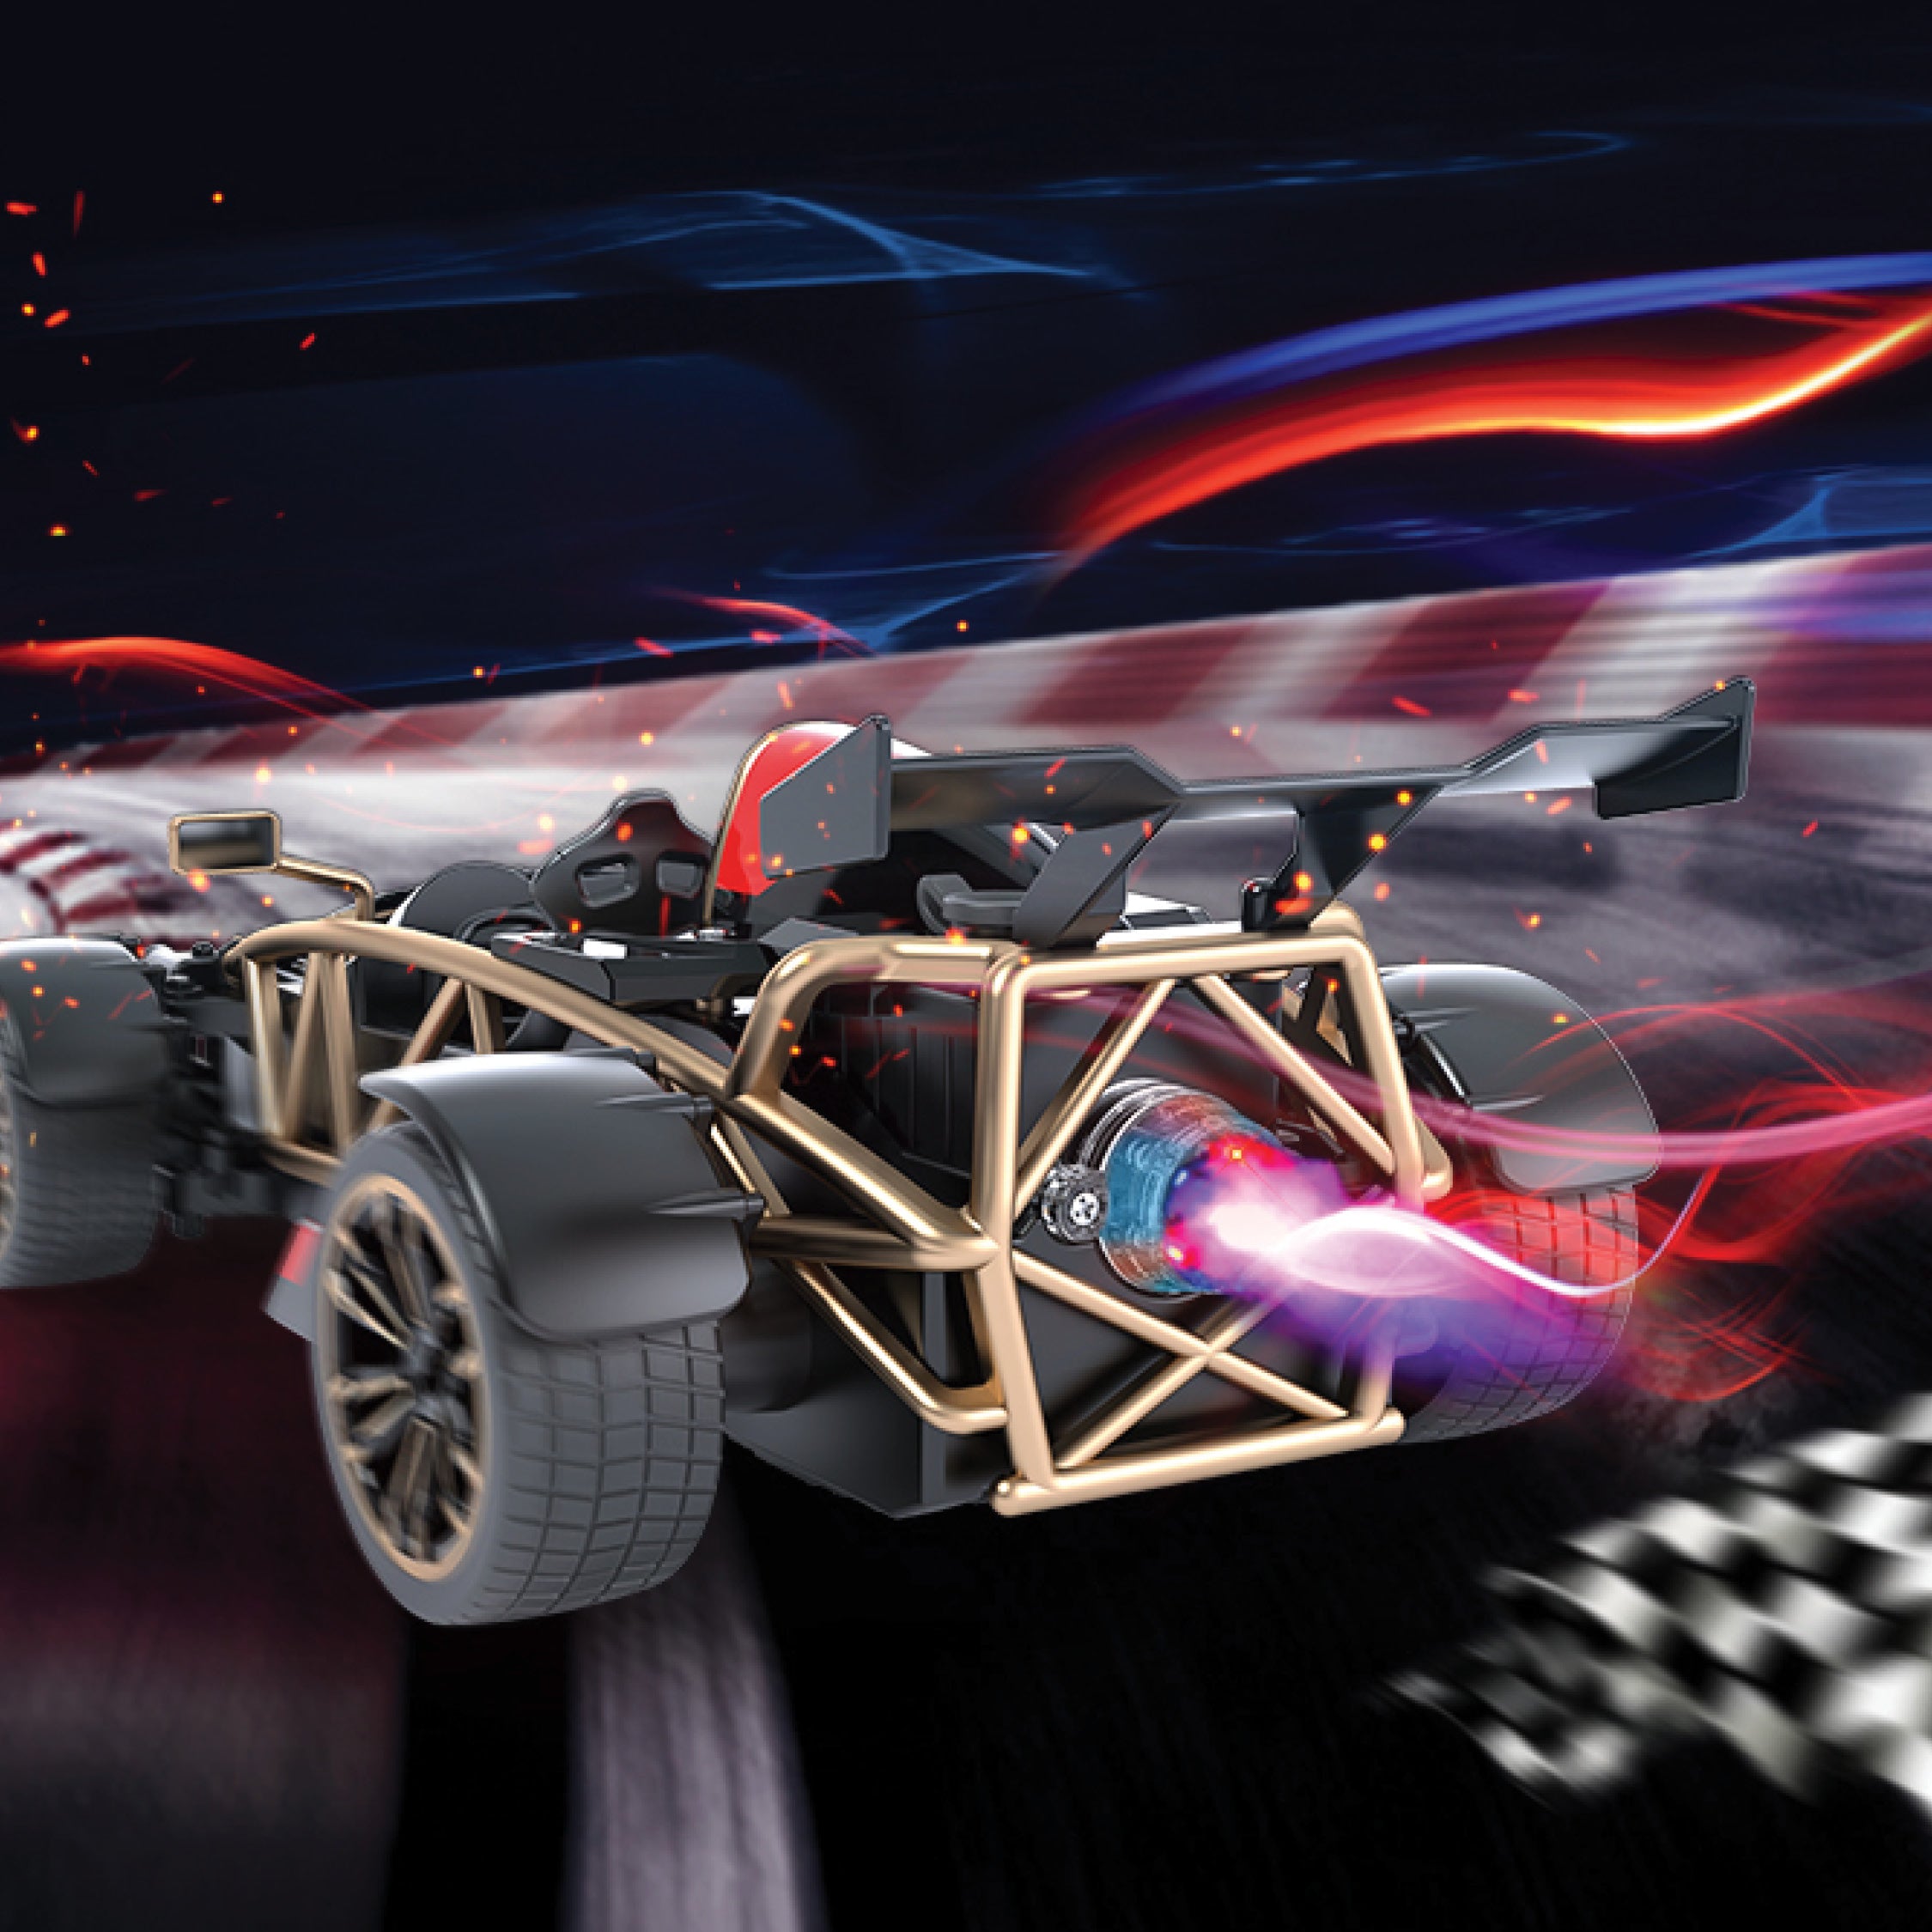 Playzu Remote control - RC Die Cast Car - Mist Spray Racing Car F1, 1:12 Scale 2.4 GHz